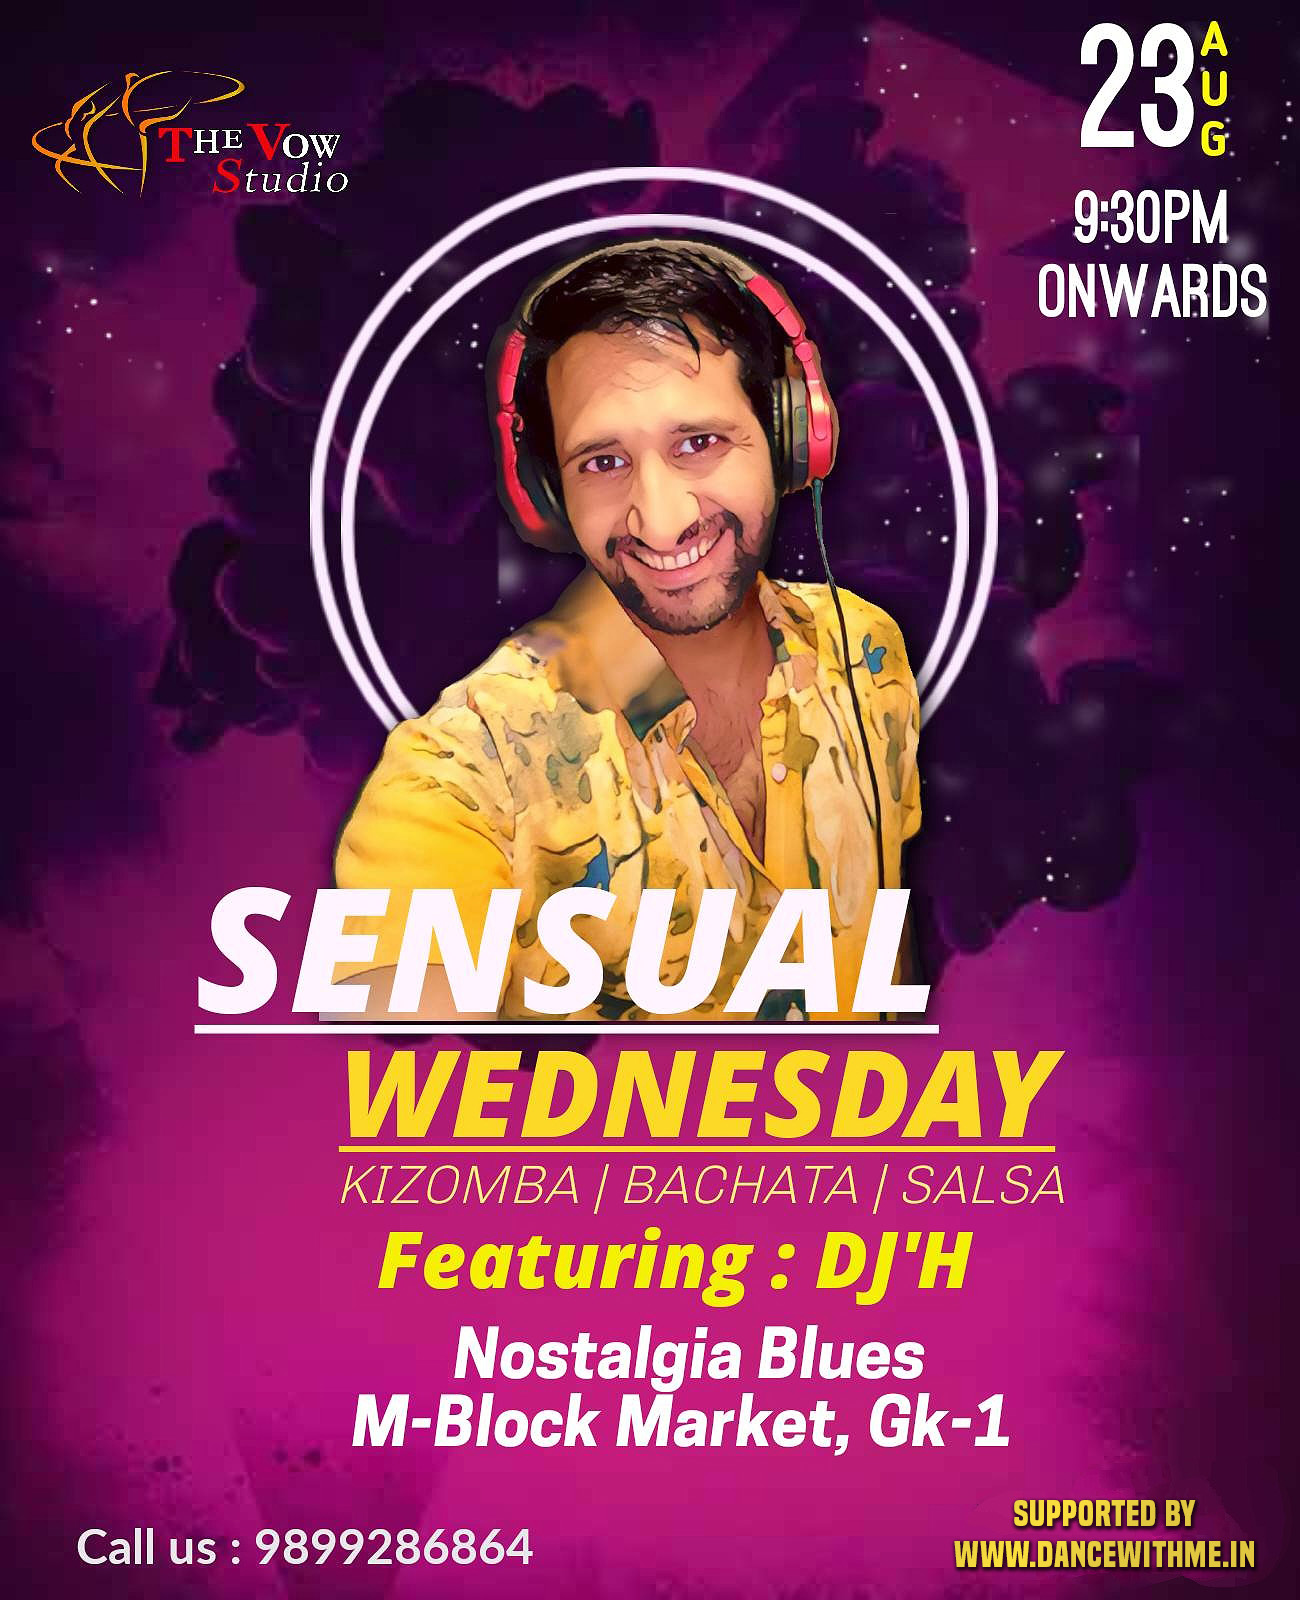 Sensual Wednesday Kizomba Bachata Salsa Afro Latin Night by The Vow Studio at Nostalgia M Block GK 1 Delhi - Dance With Me India